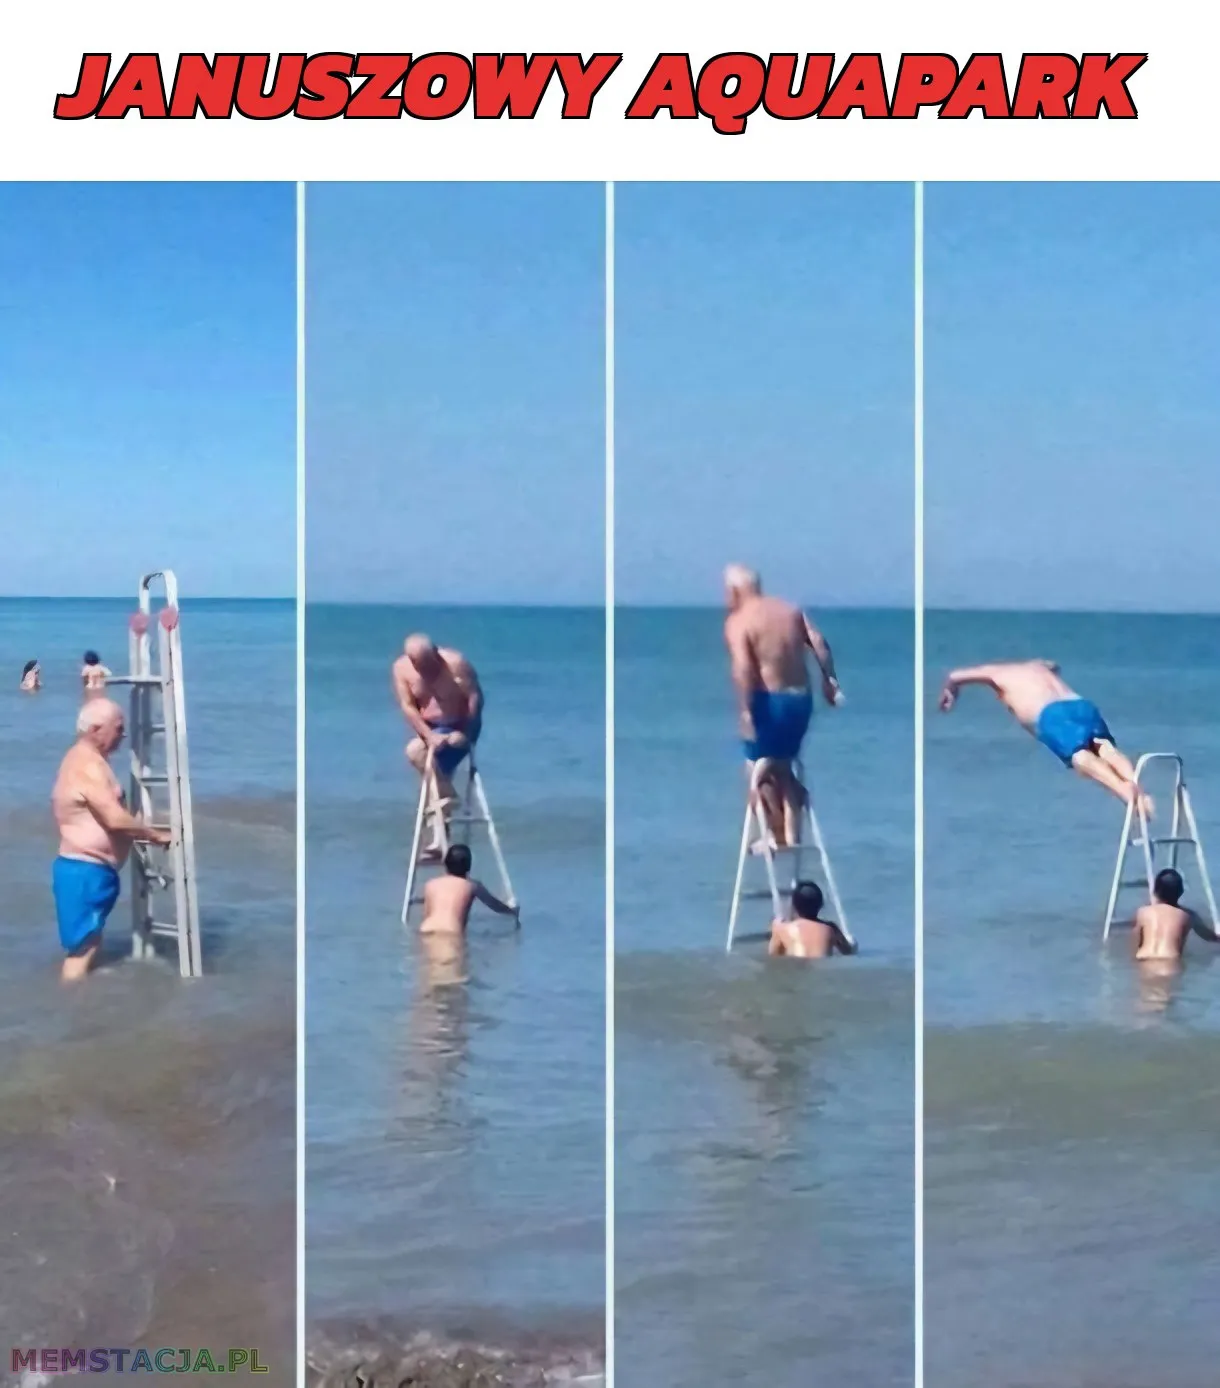 Januszowy aquapark: 'Starszy mężczyzna z dzieckiem, którzy skaczą do morza z drabinki'